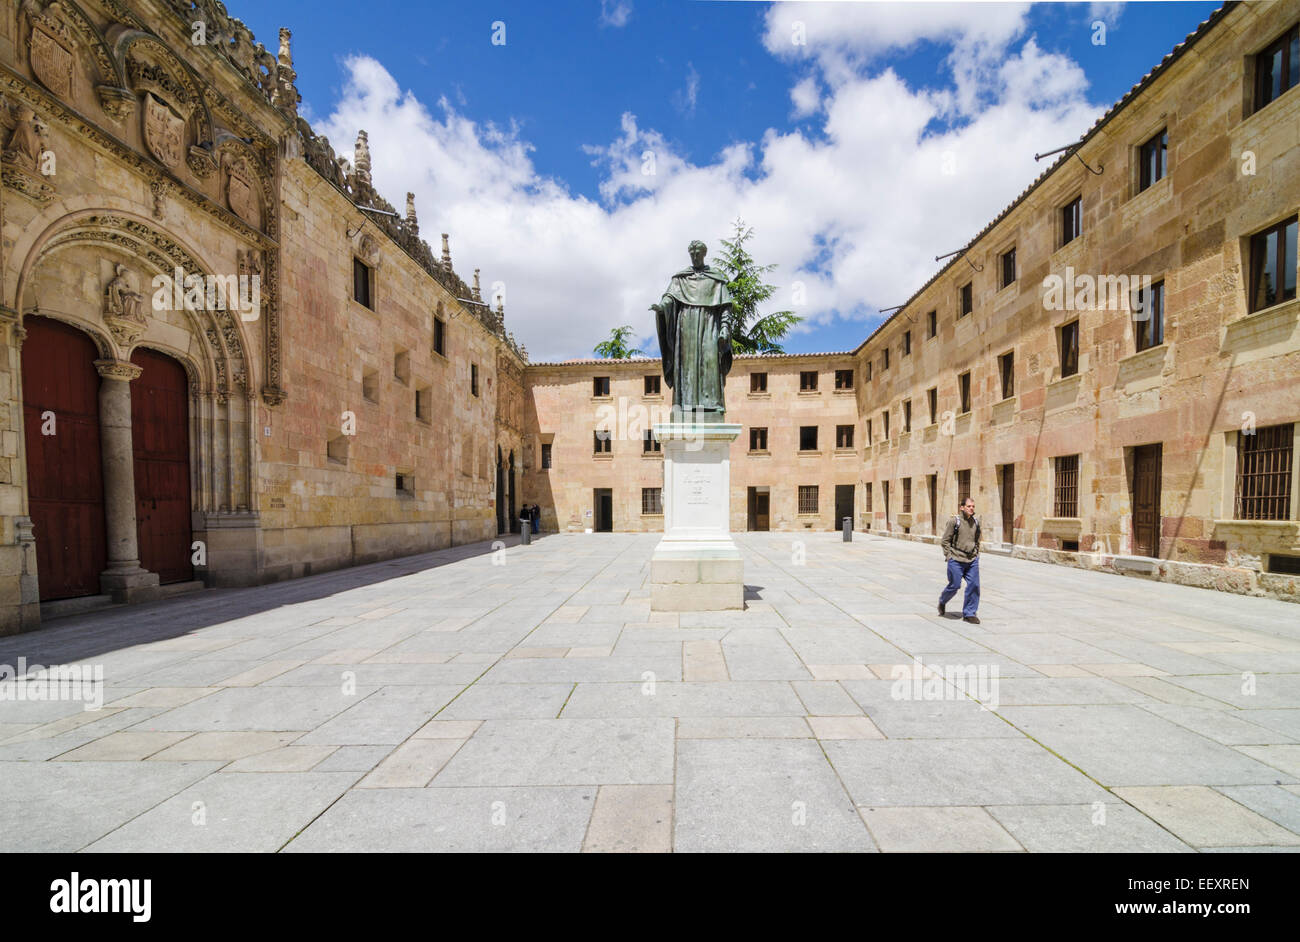 Estatua de Fray Luis de León en los terrenos de los antiguos edificios de la Universidad de Salamanca, Salamanca, Castilla y León, España Foto de stock